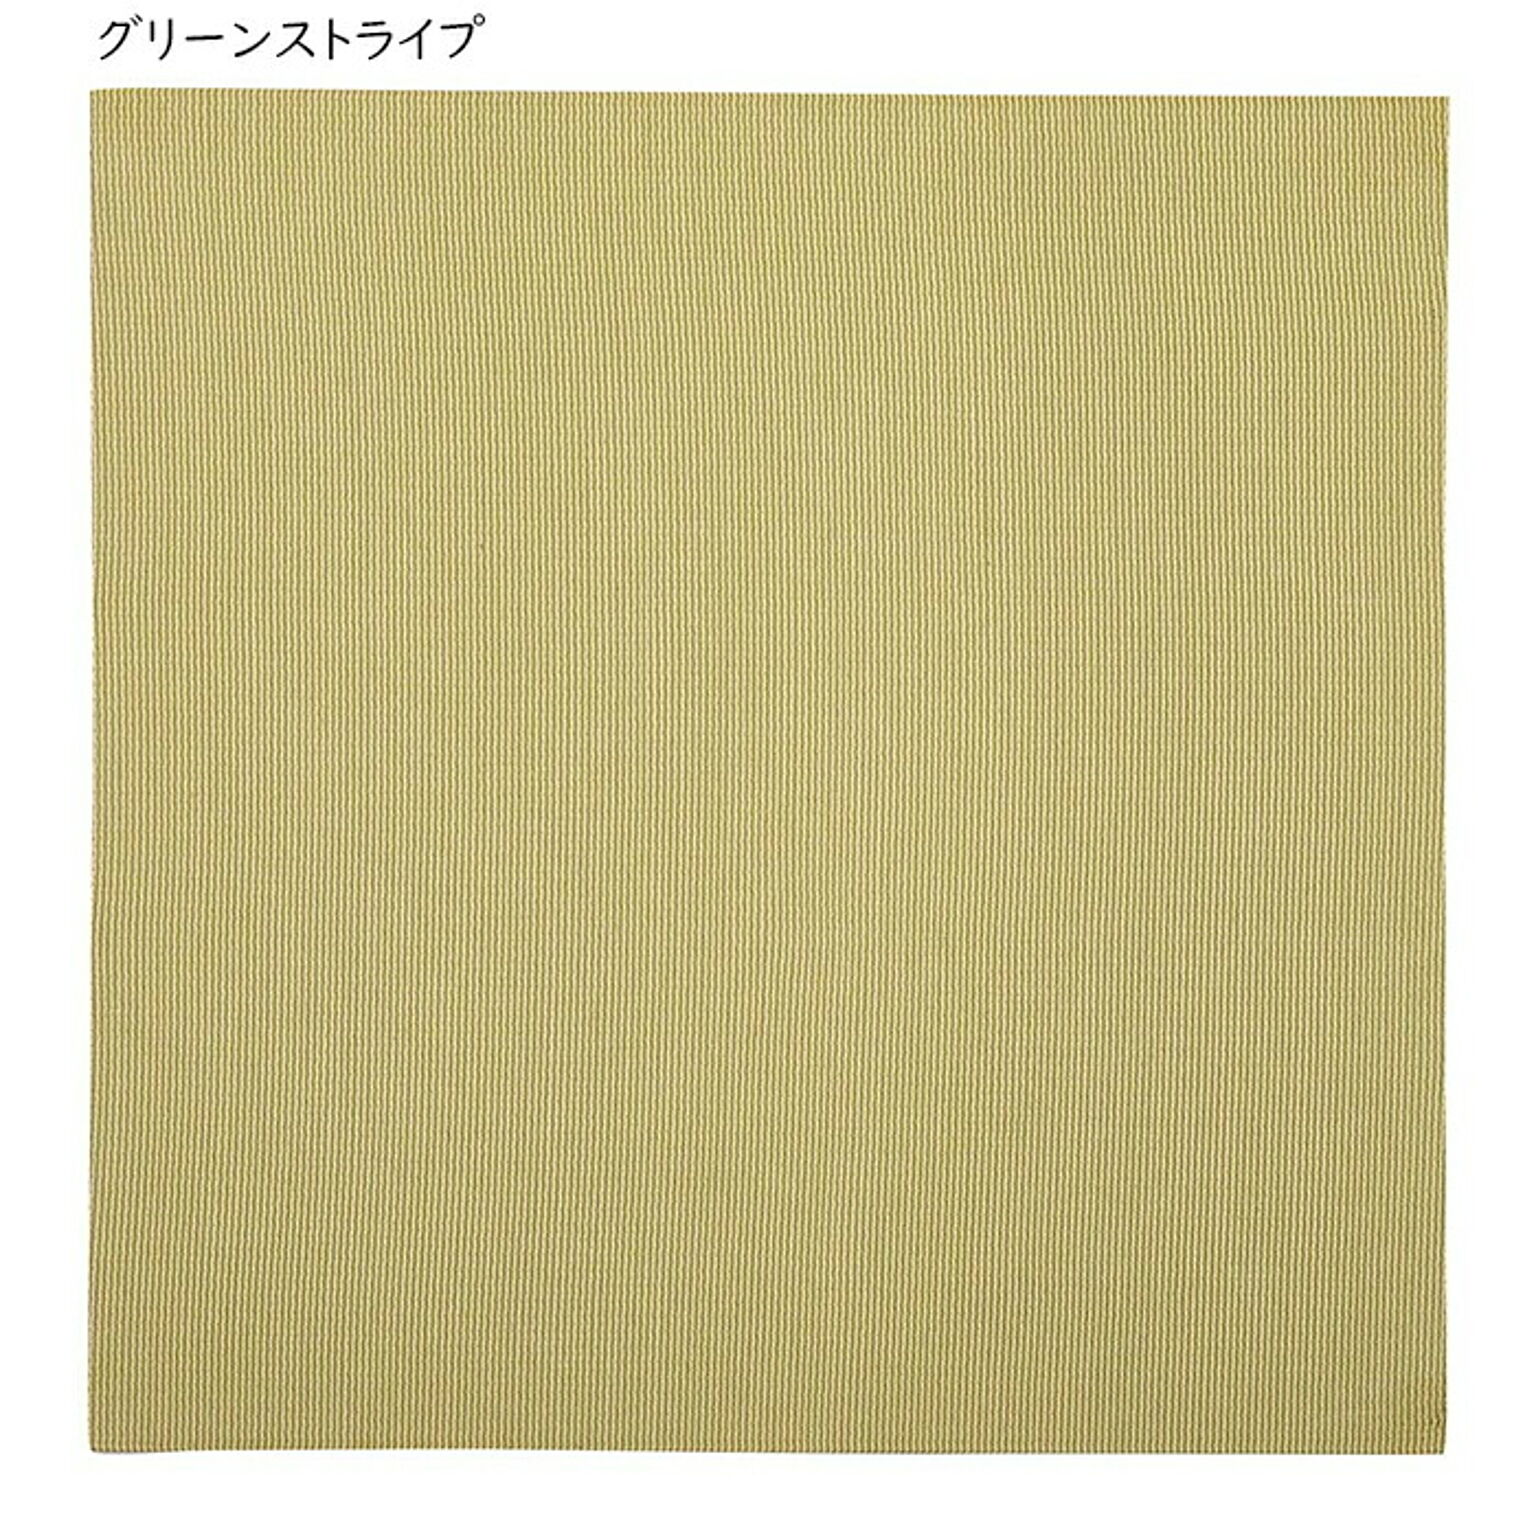 畳 萩原の畳屋さんシリーズ DIY用薄畳 いつき 同色3枚入 82x82cm 萩原